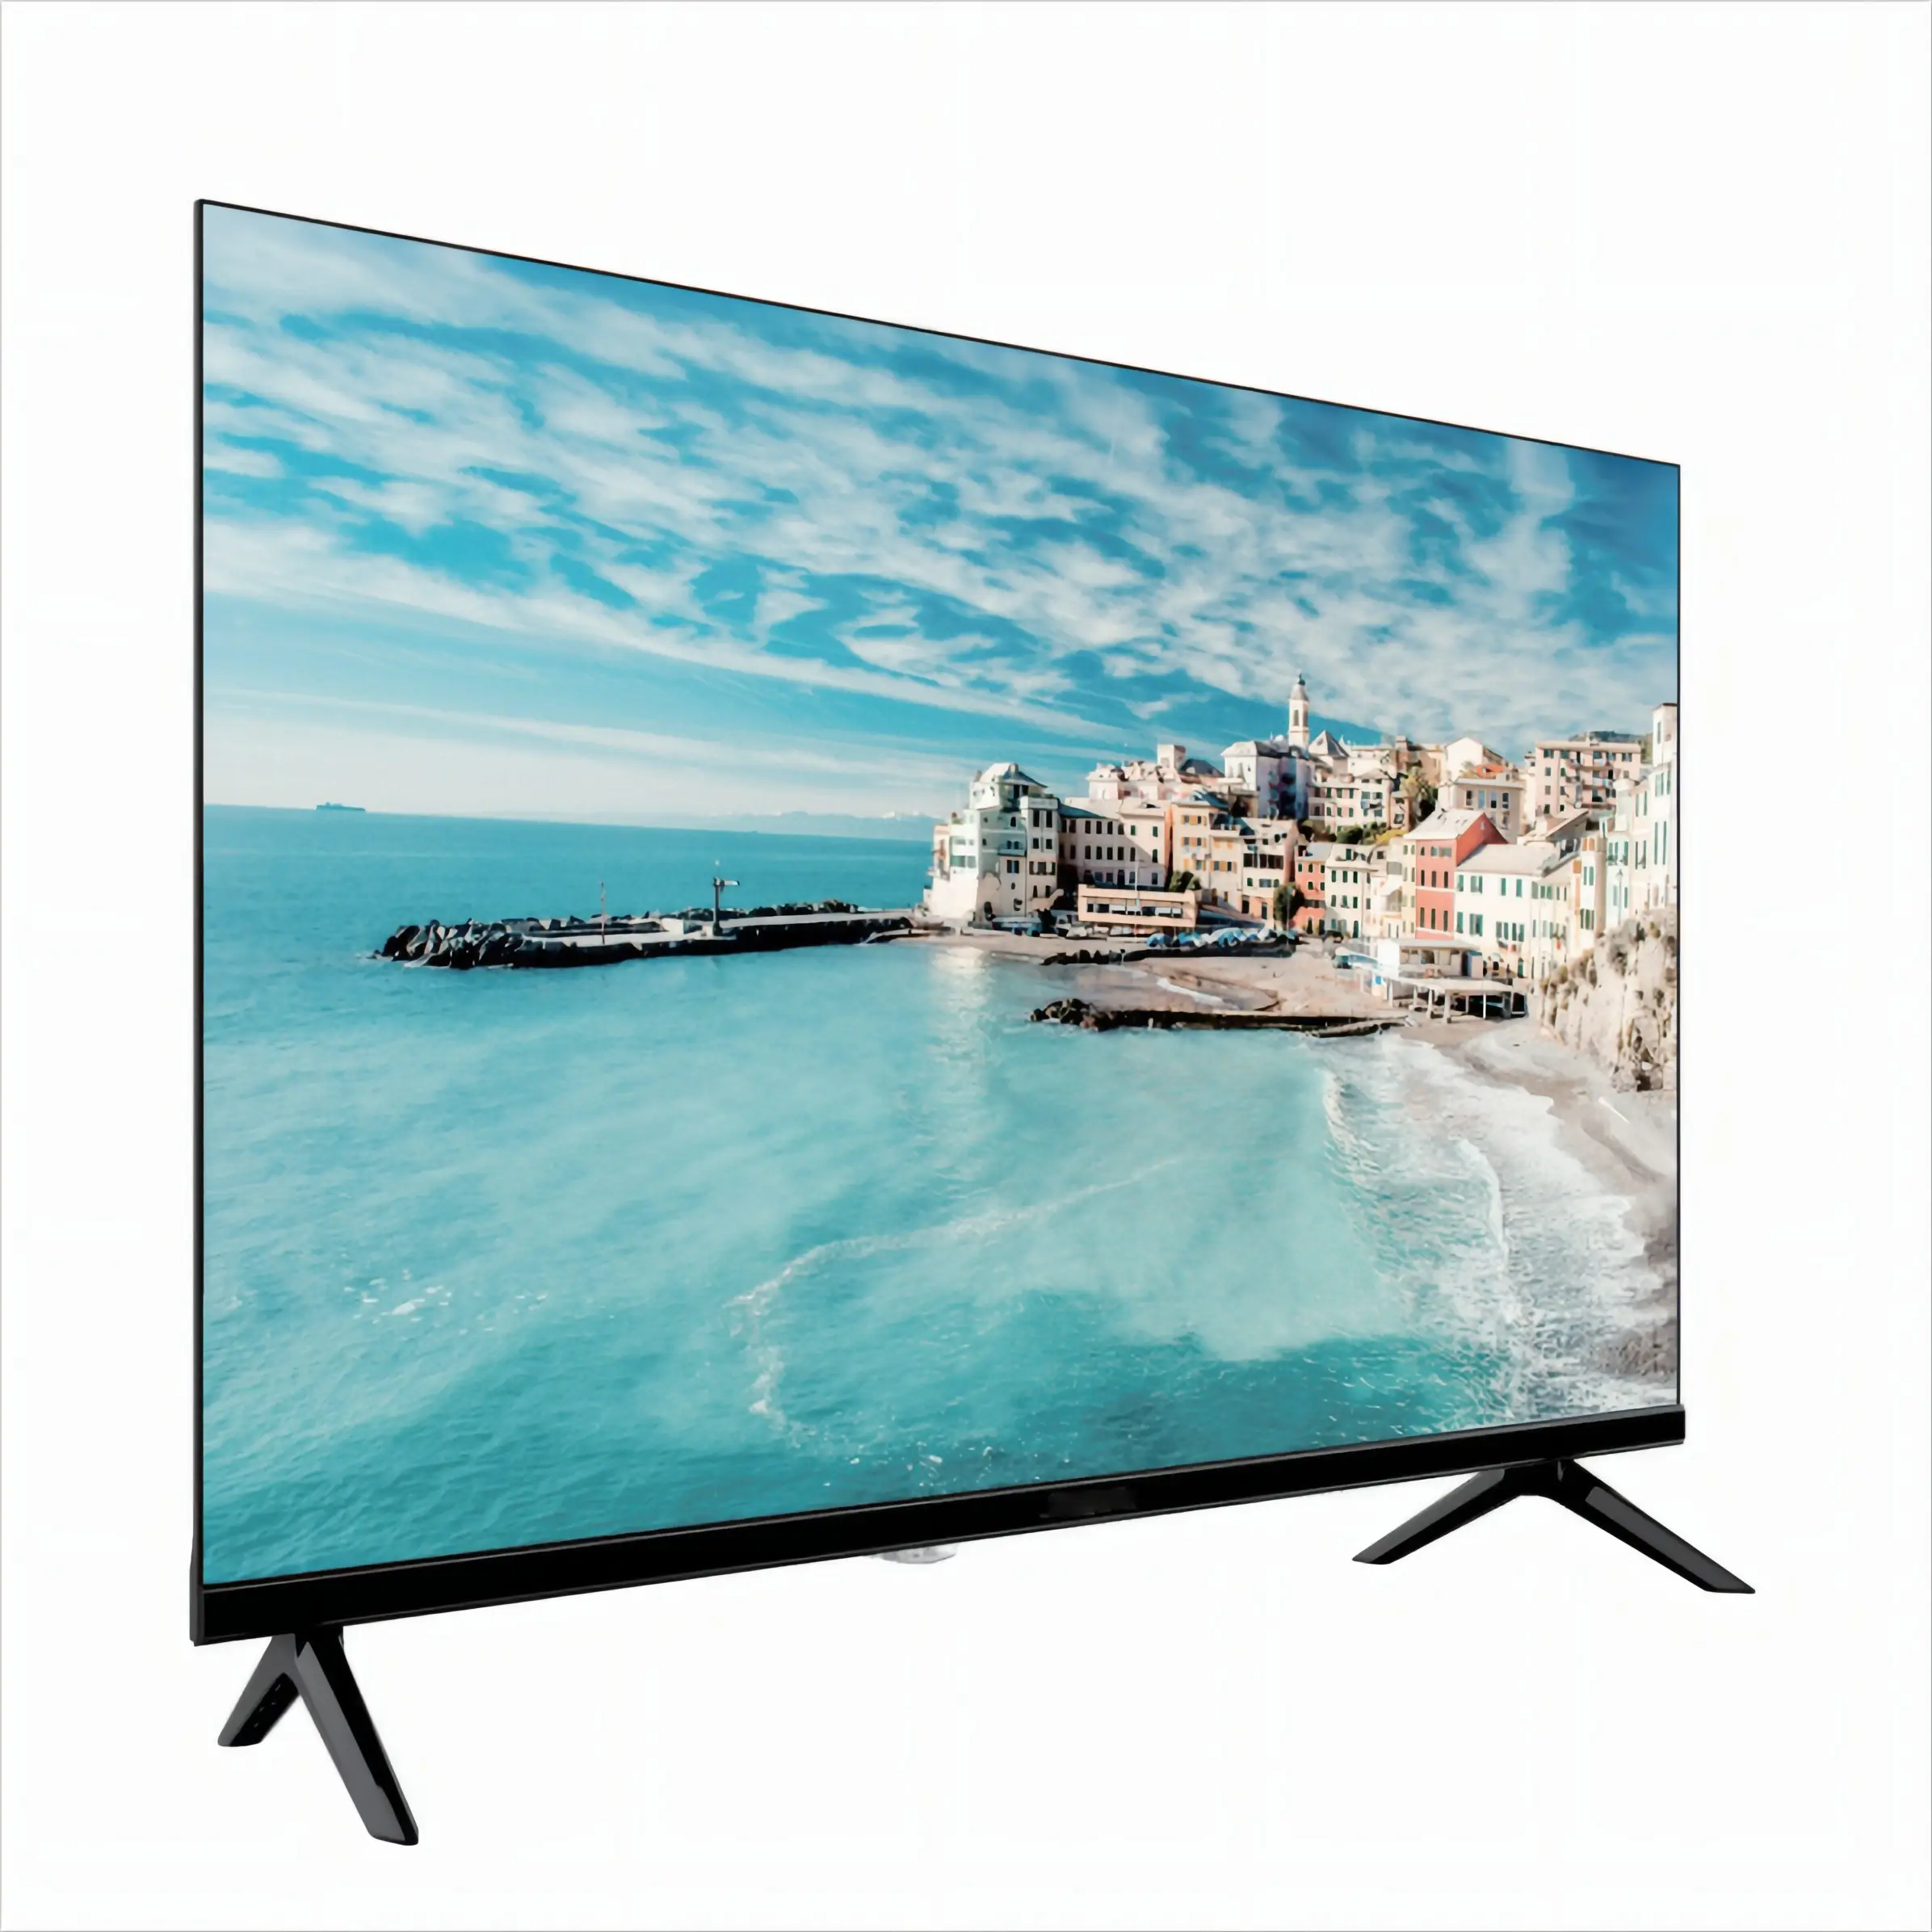 ทีวีไร้กรอบ 42 ฟราม HD พร้อมคุณภาพภาพภาพ 720p ลําโพงสเตอริโอในตัว, พอร์ต USB, รีโมทคอนโทรลแบบเต็มรูปแบบติดผนัง